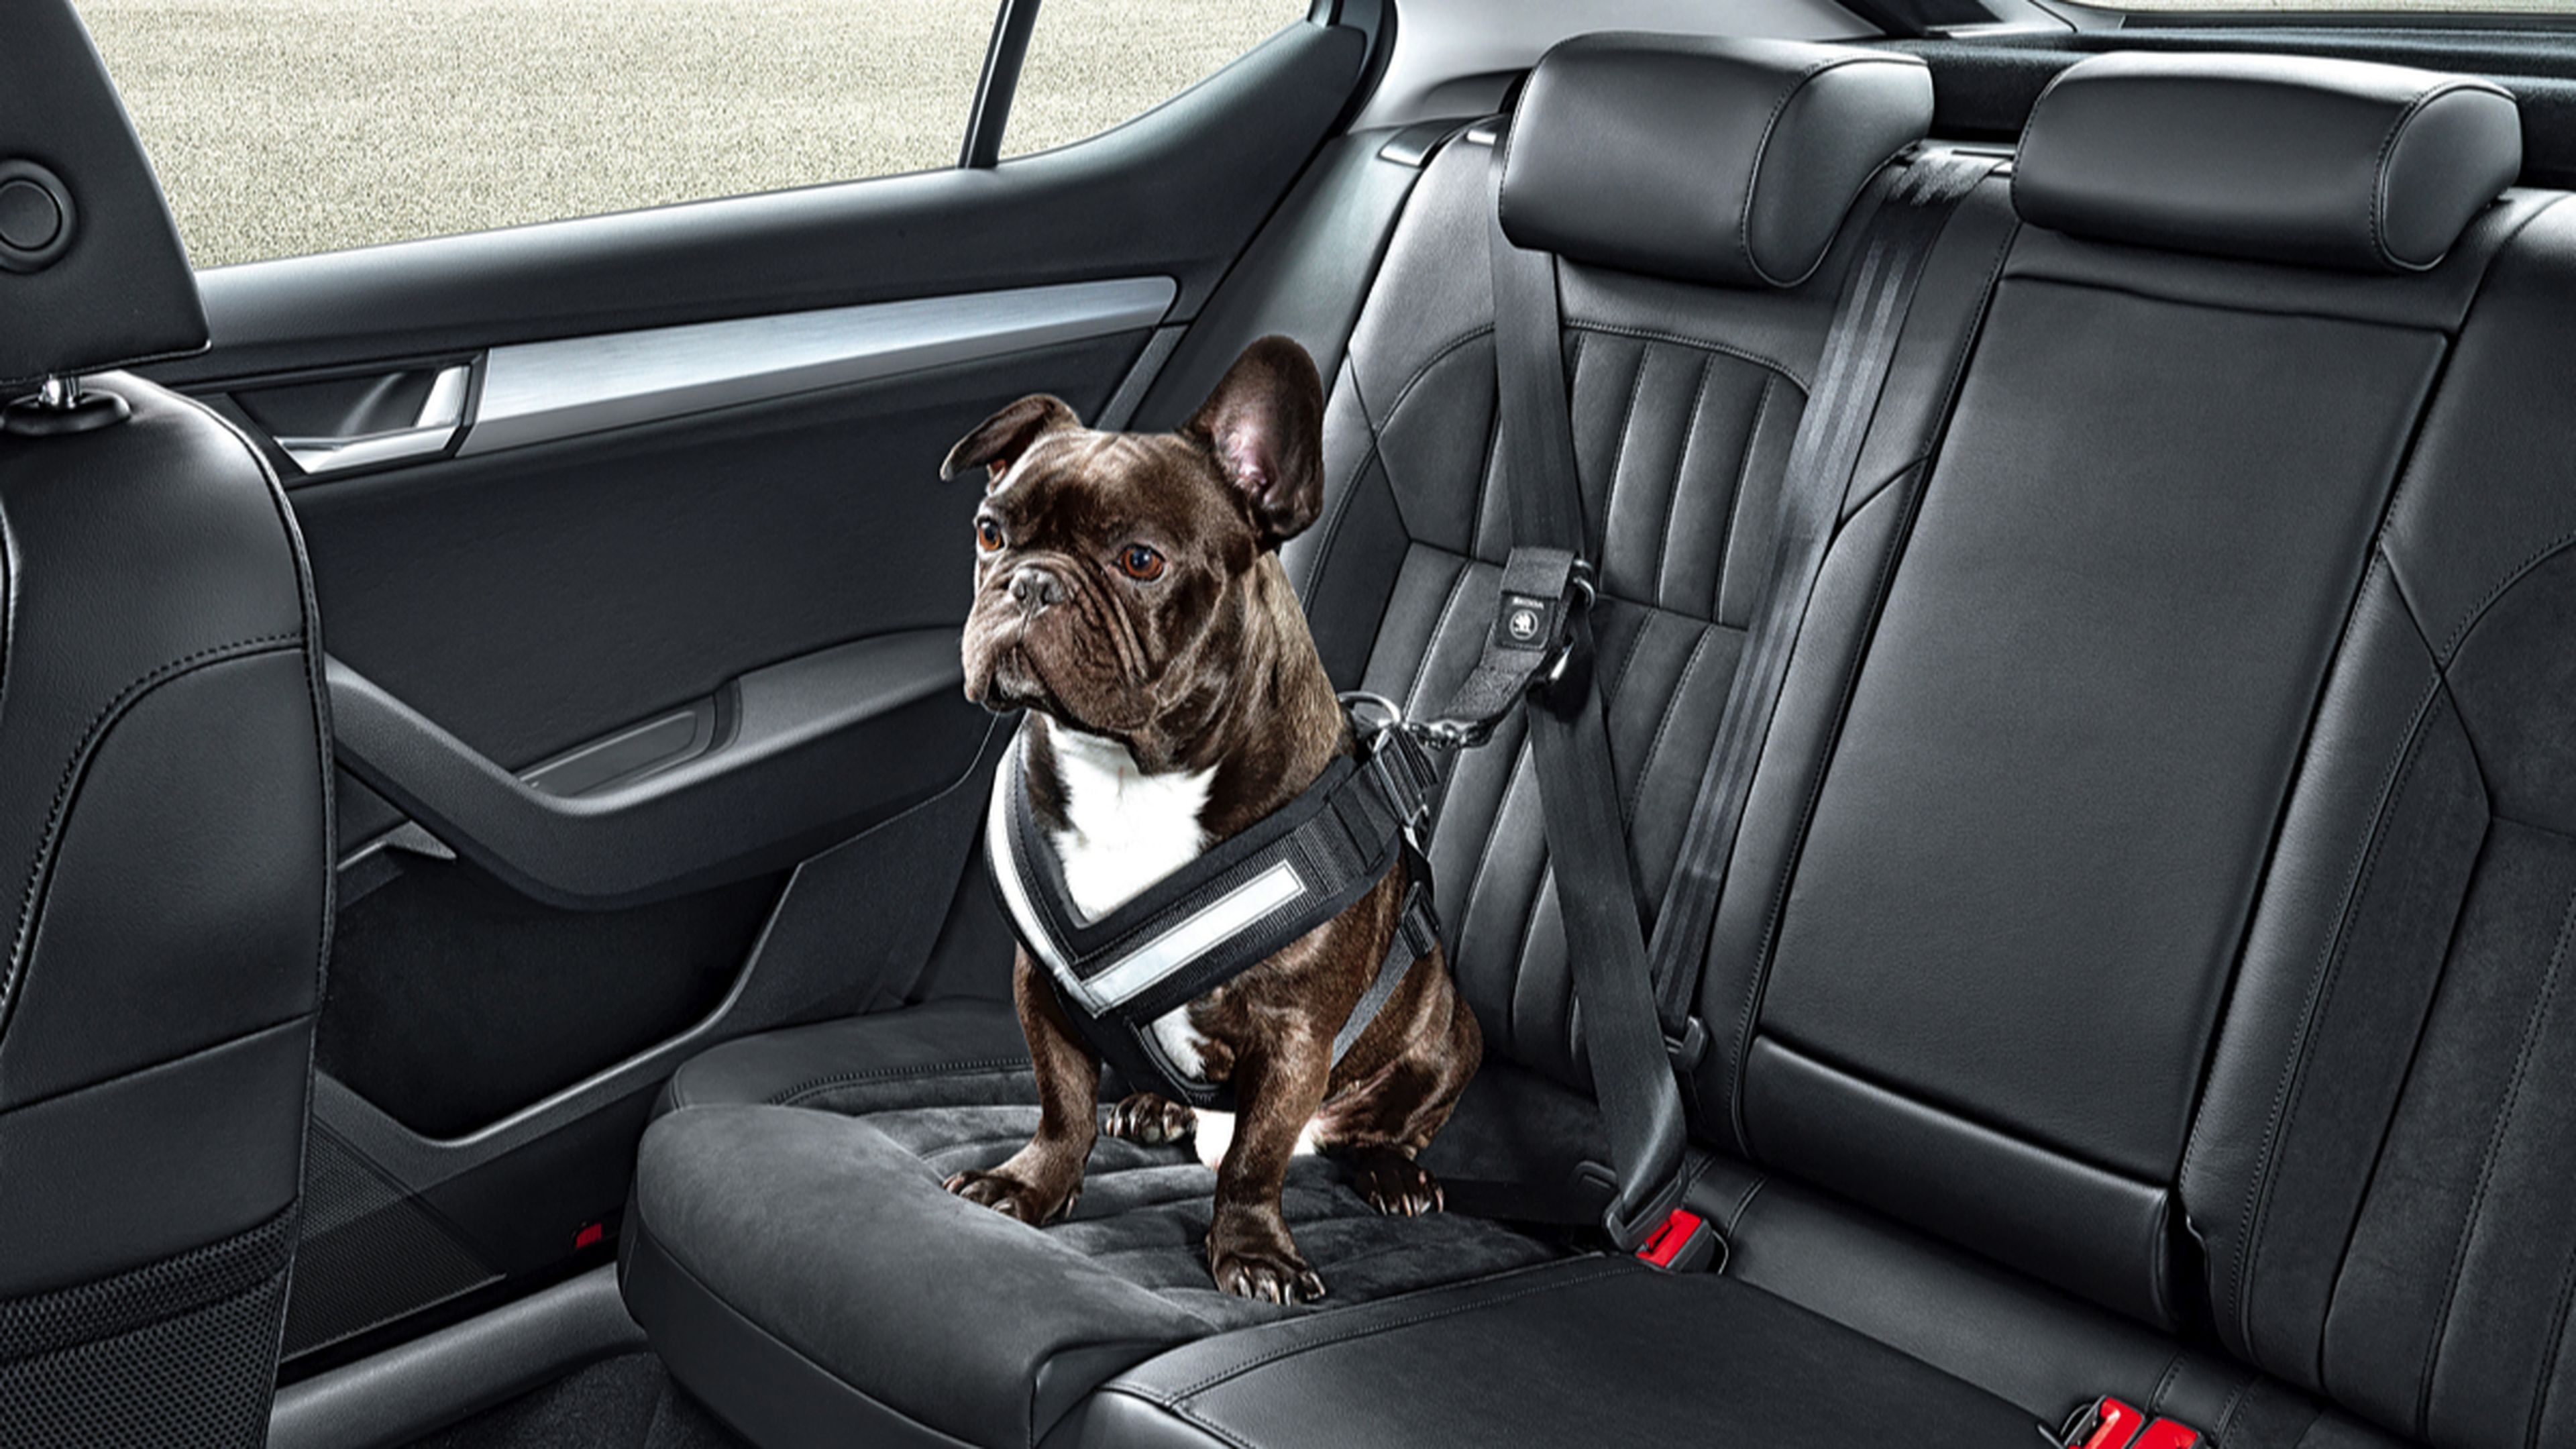 Accesorios para perros en el coche